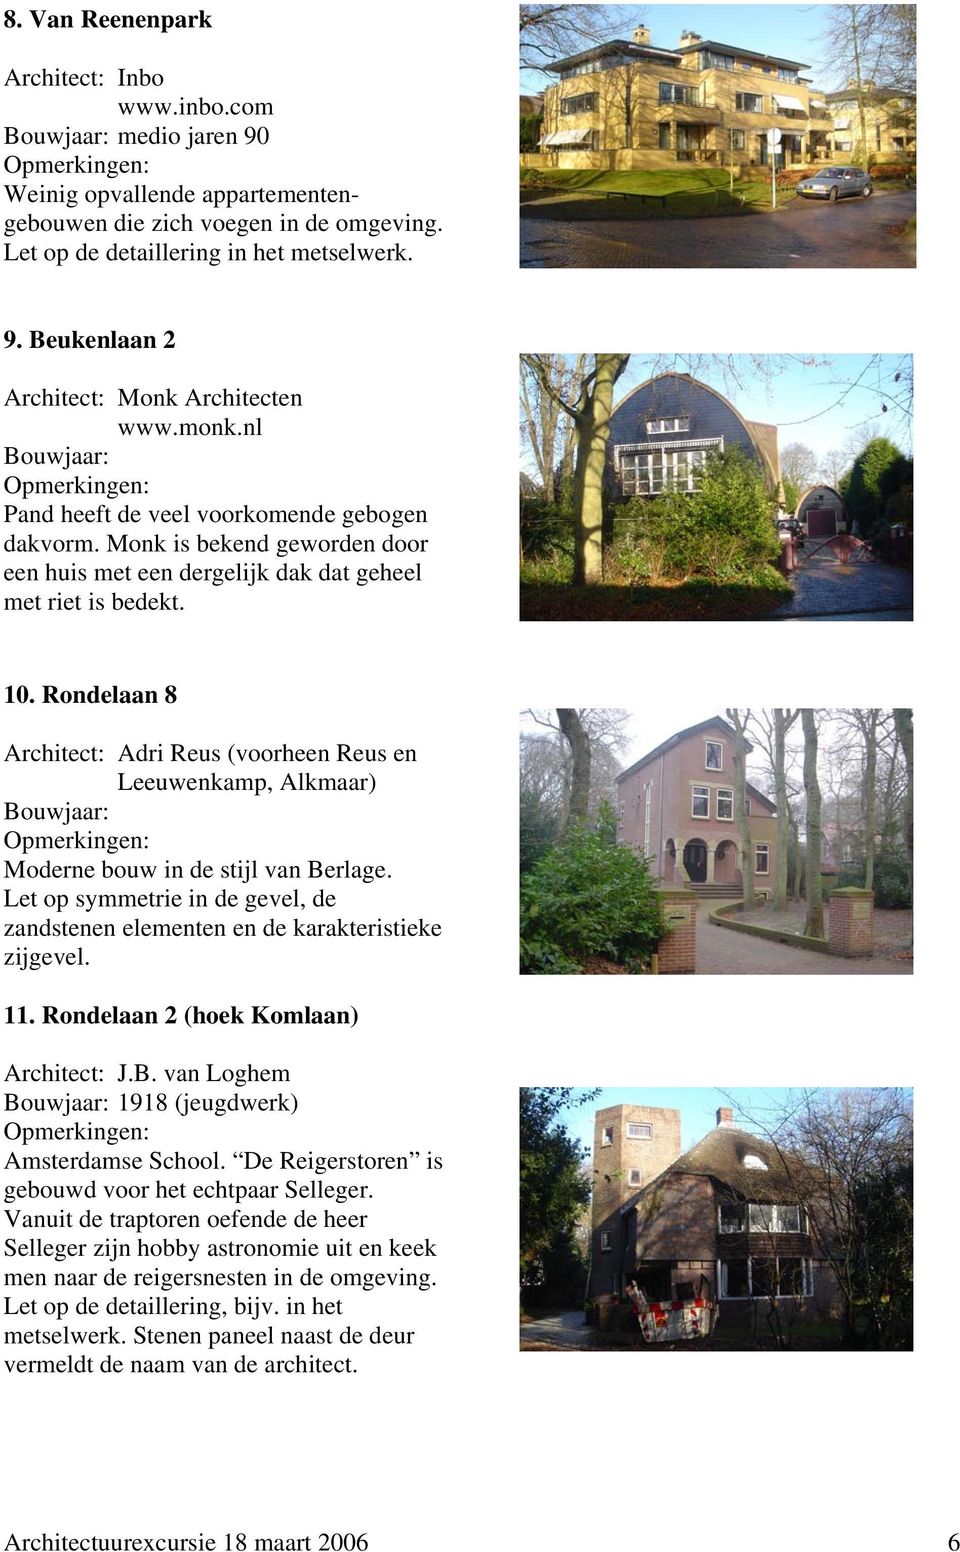 Rondelaan 8 Architect: Adri Reus (voorheen Reus en Leeuwenkamp, Alkmaar) Bouwjaar: Moderne bouw in de stijl van Berlage.